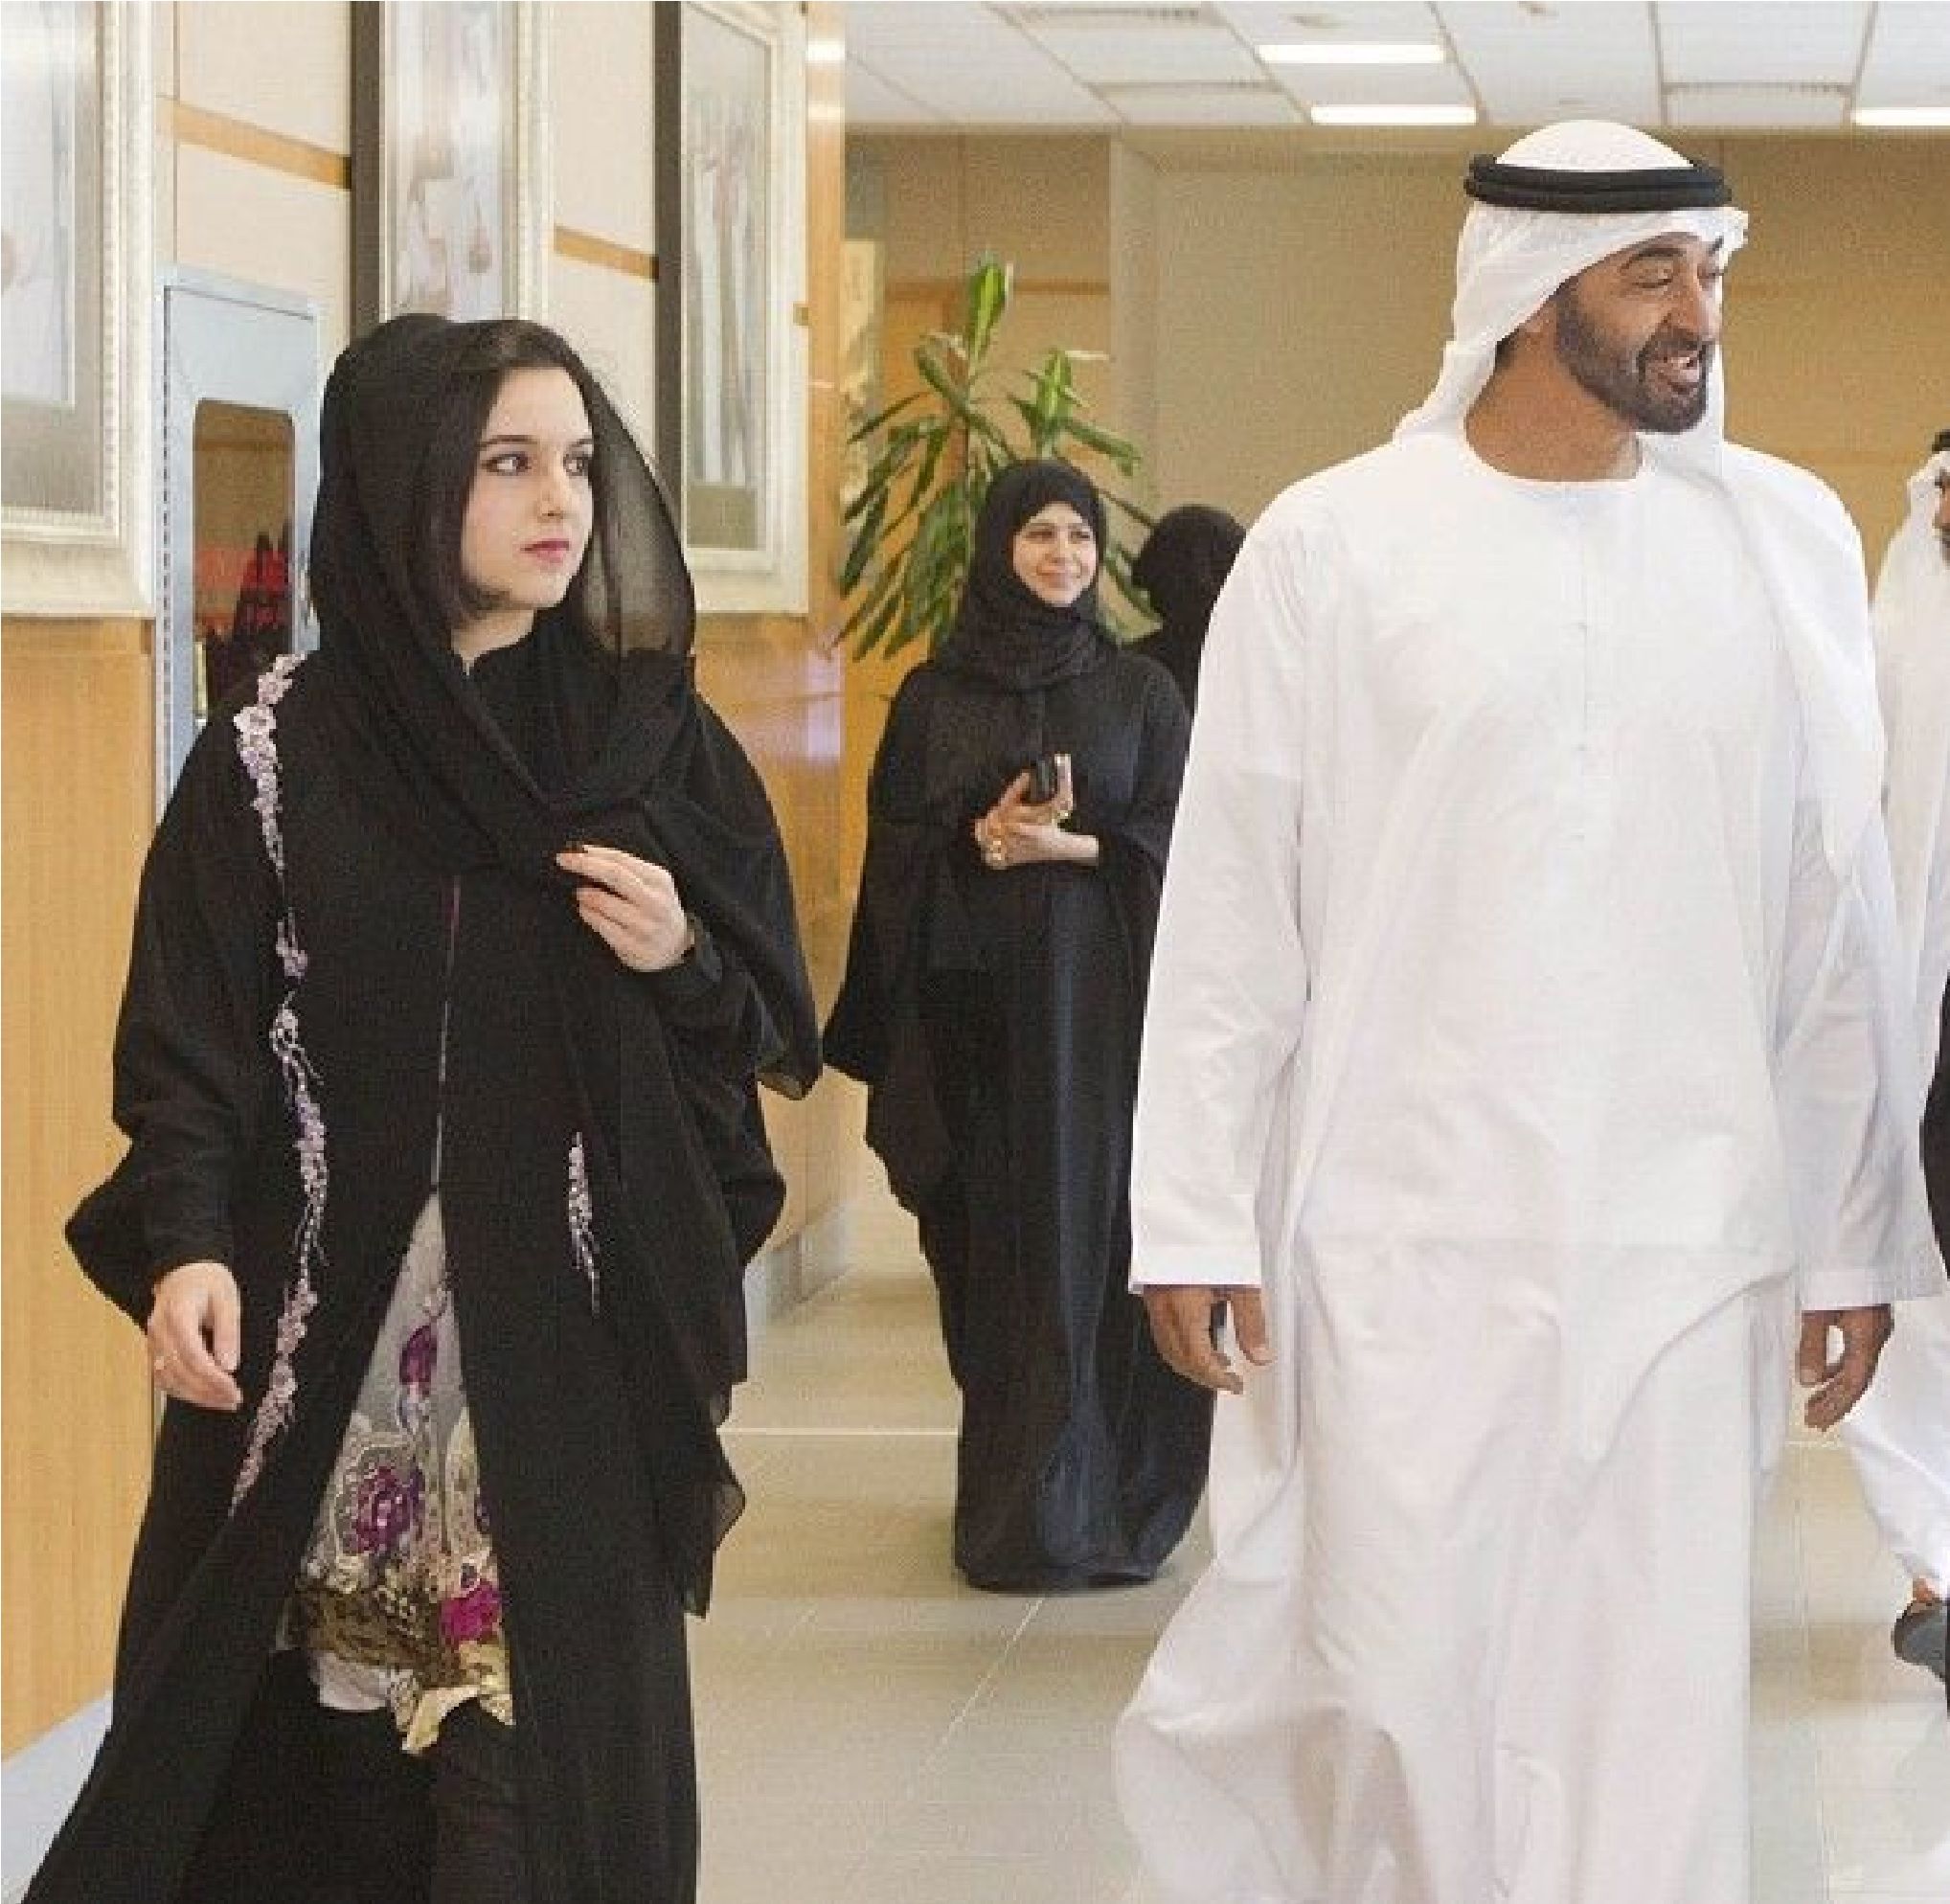 Potret Sheikh Mohammed bin Zayed Al Nahyan dan Putri Salama di Dubai